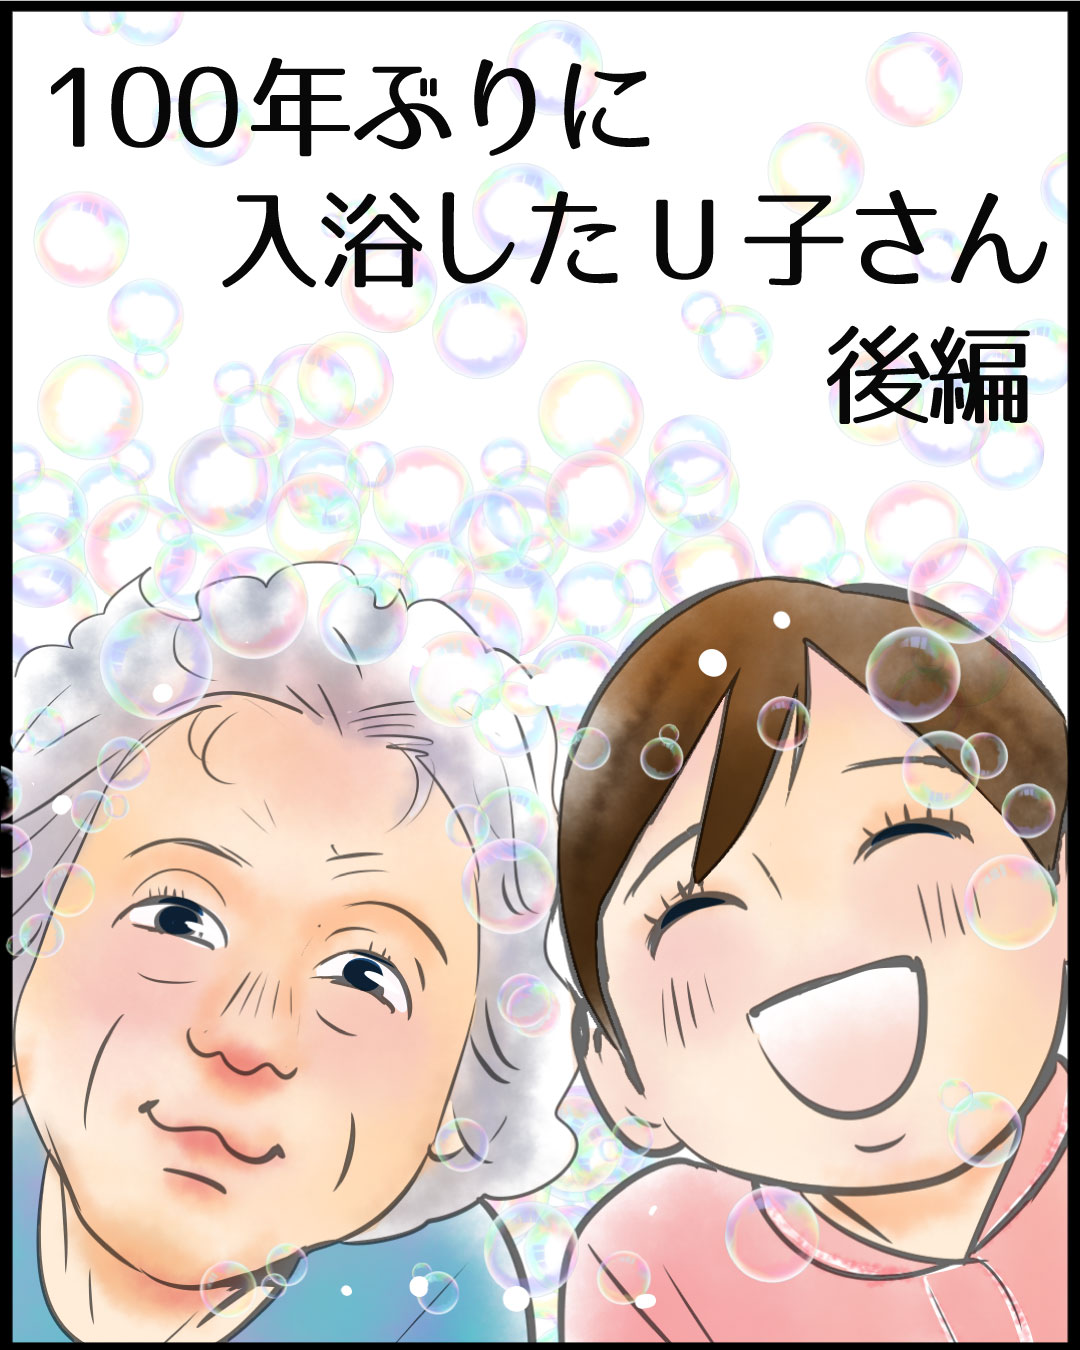 漫画「100年ぶりに入浴したU子さん」17-0